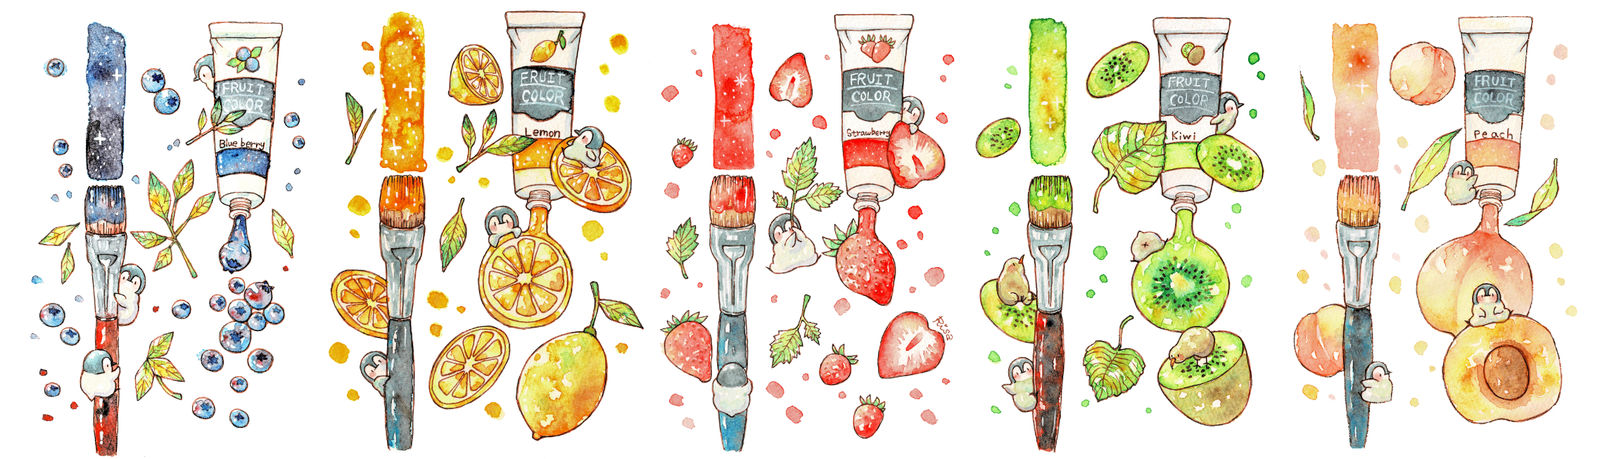 水果颜料总结插画图片壁纸